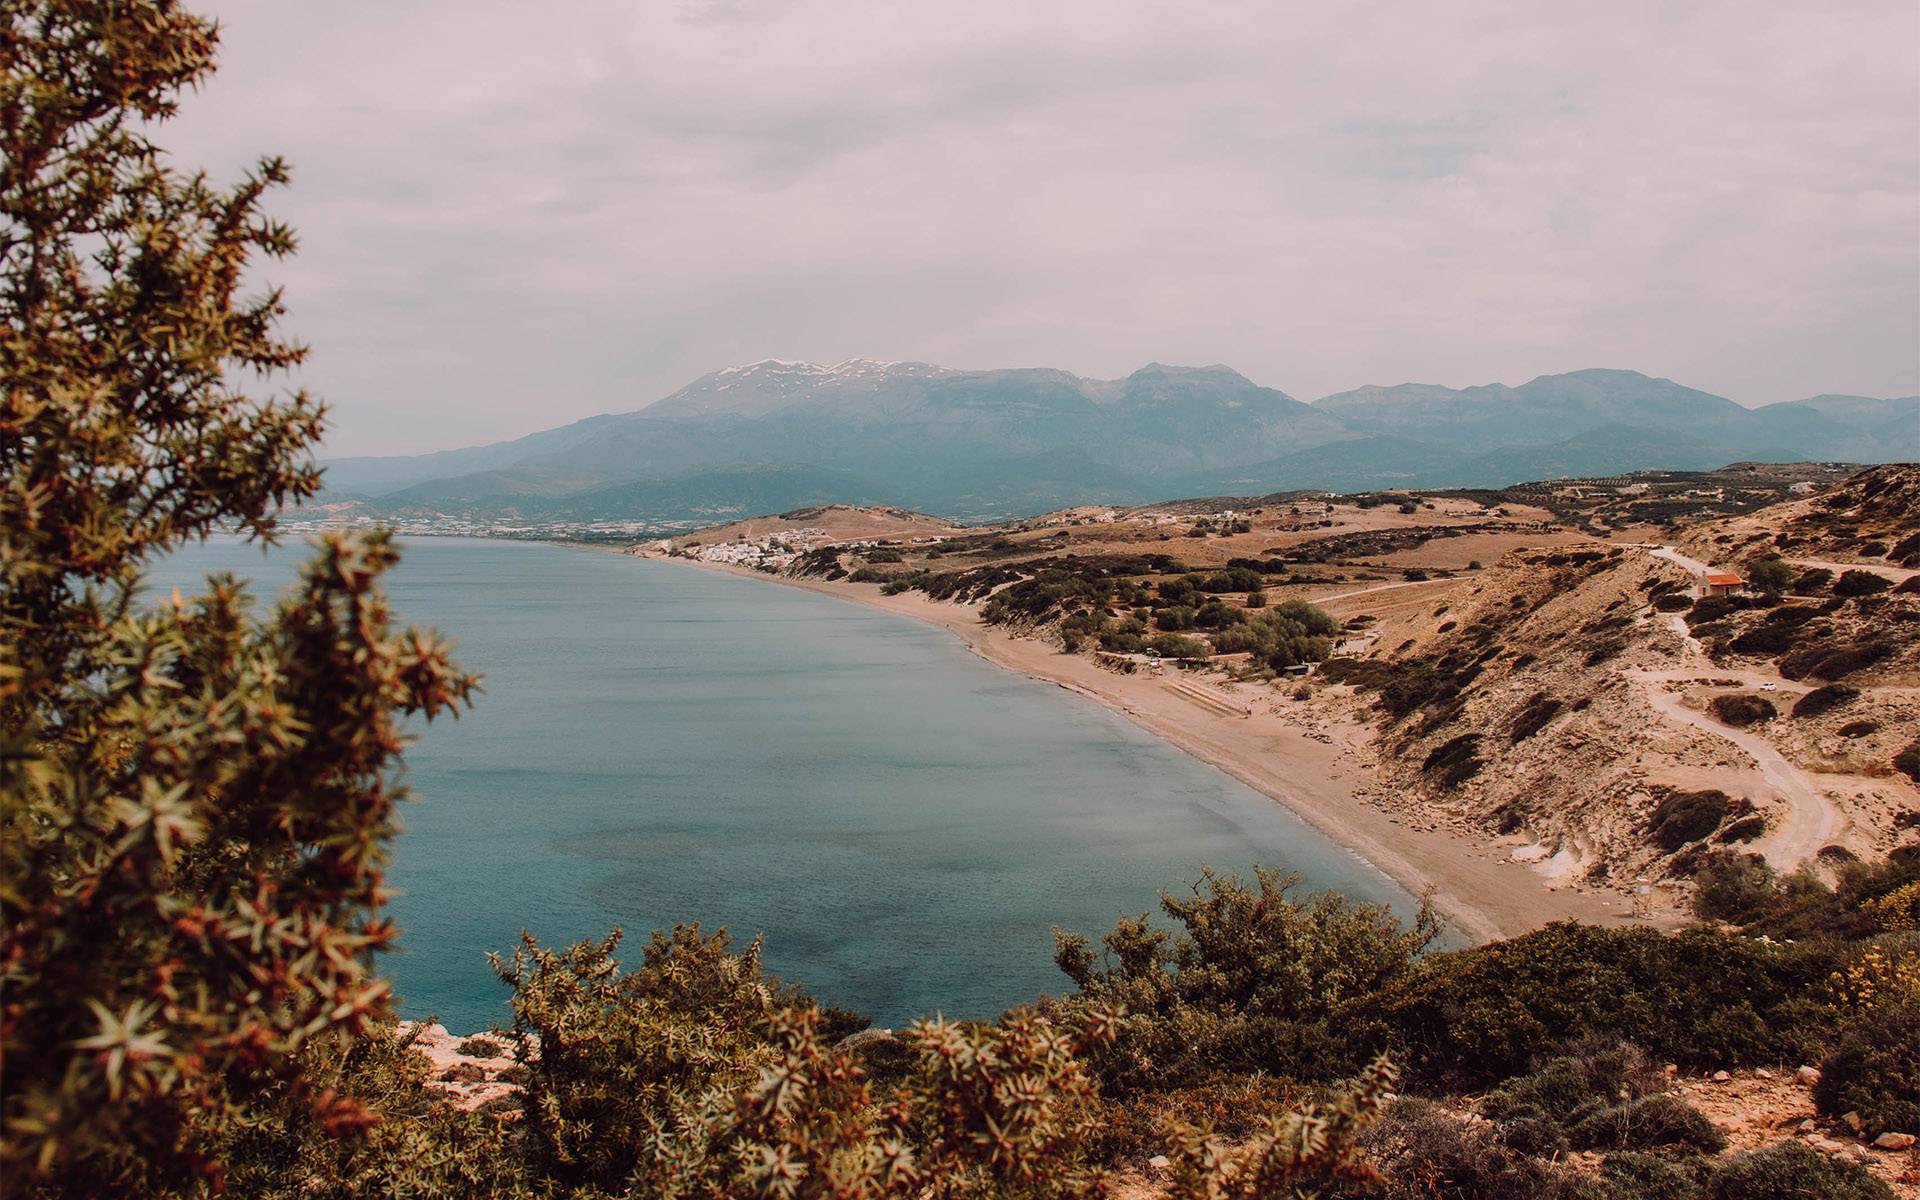 Blick über eine Kuppe Richtung mehr einer Bucht im Meer auf Kreta.